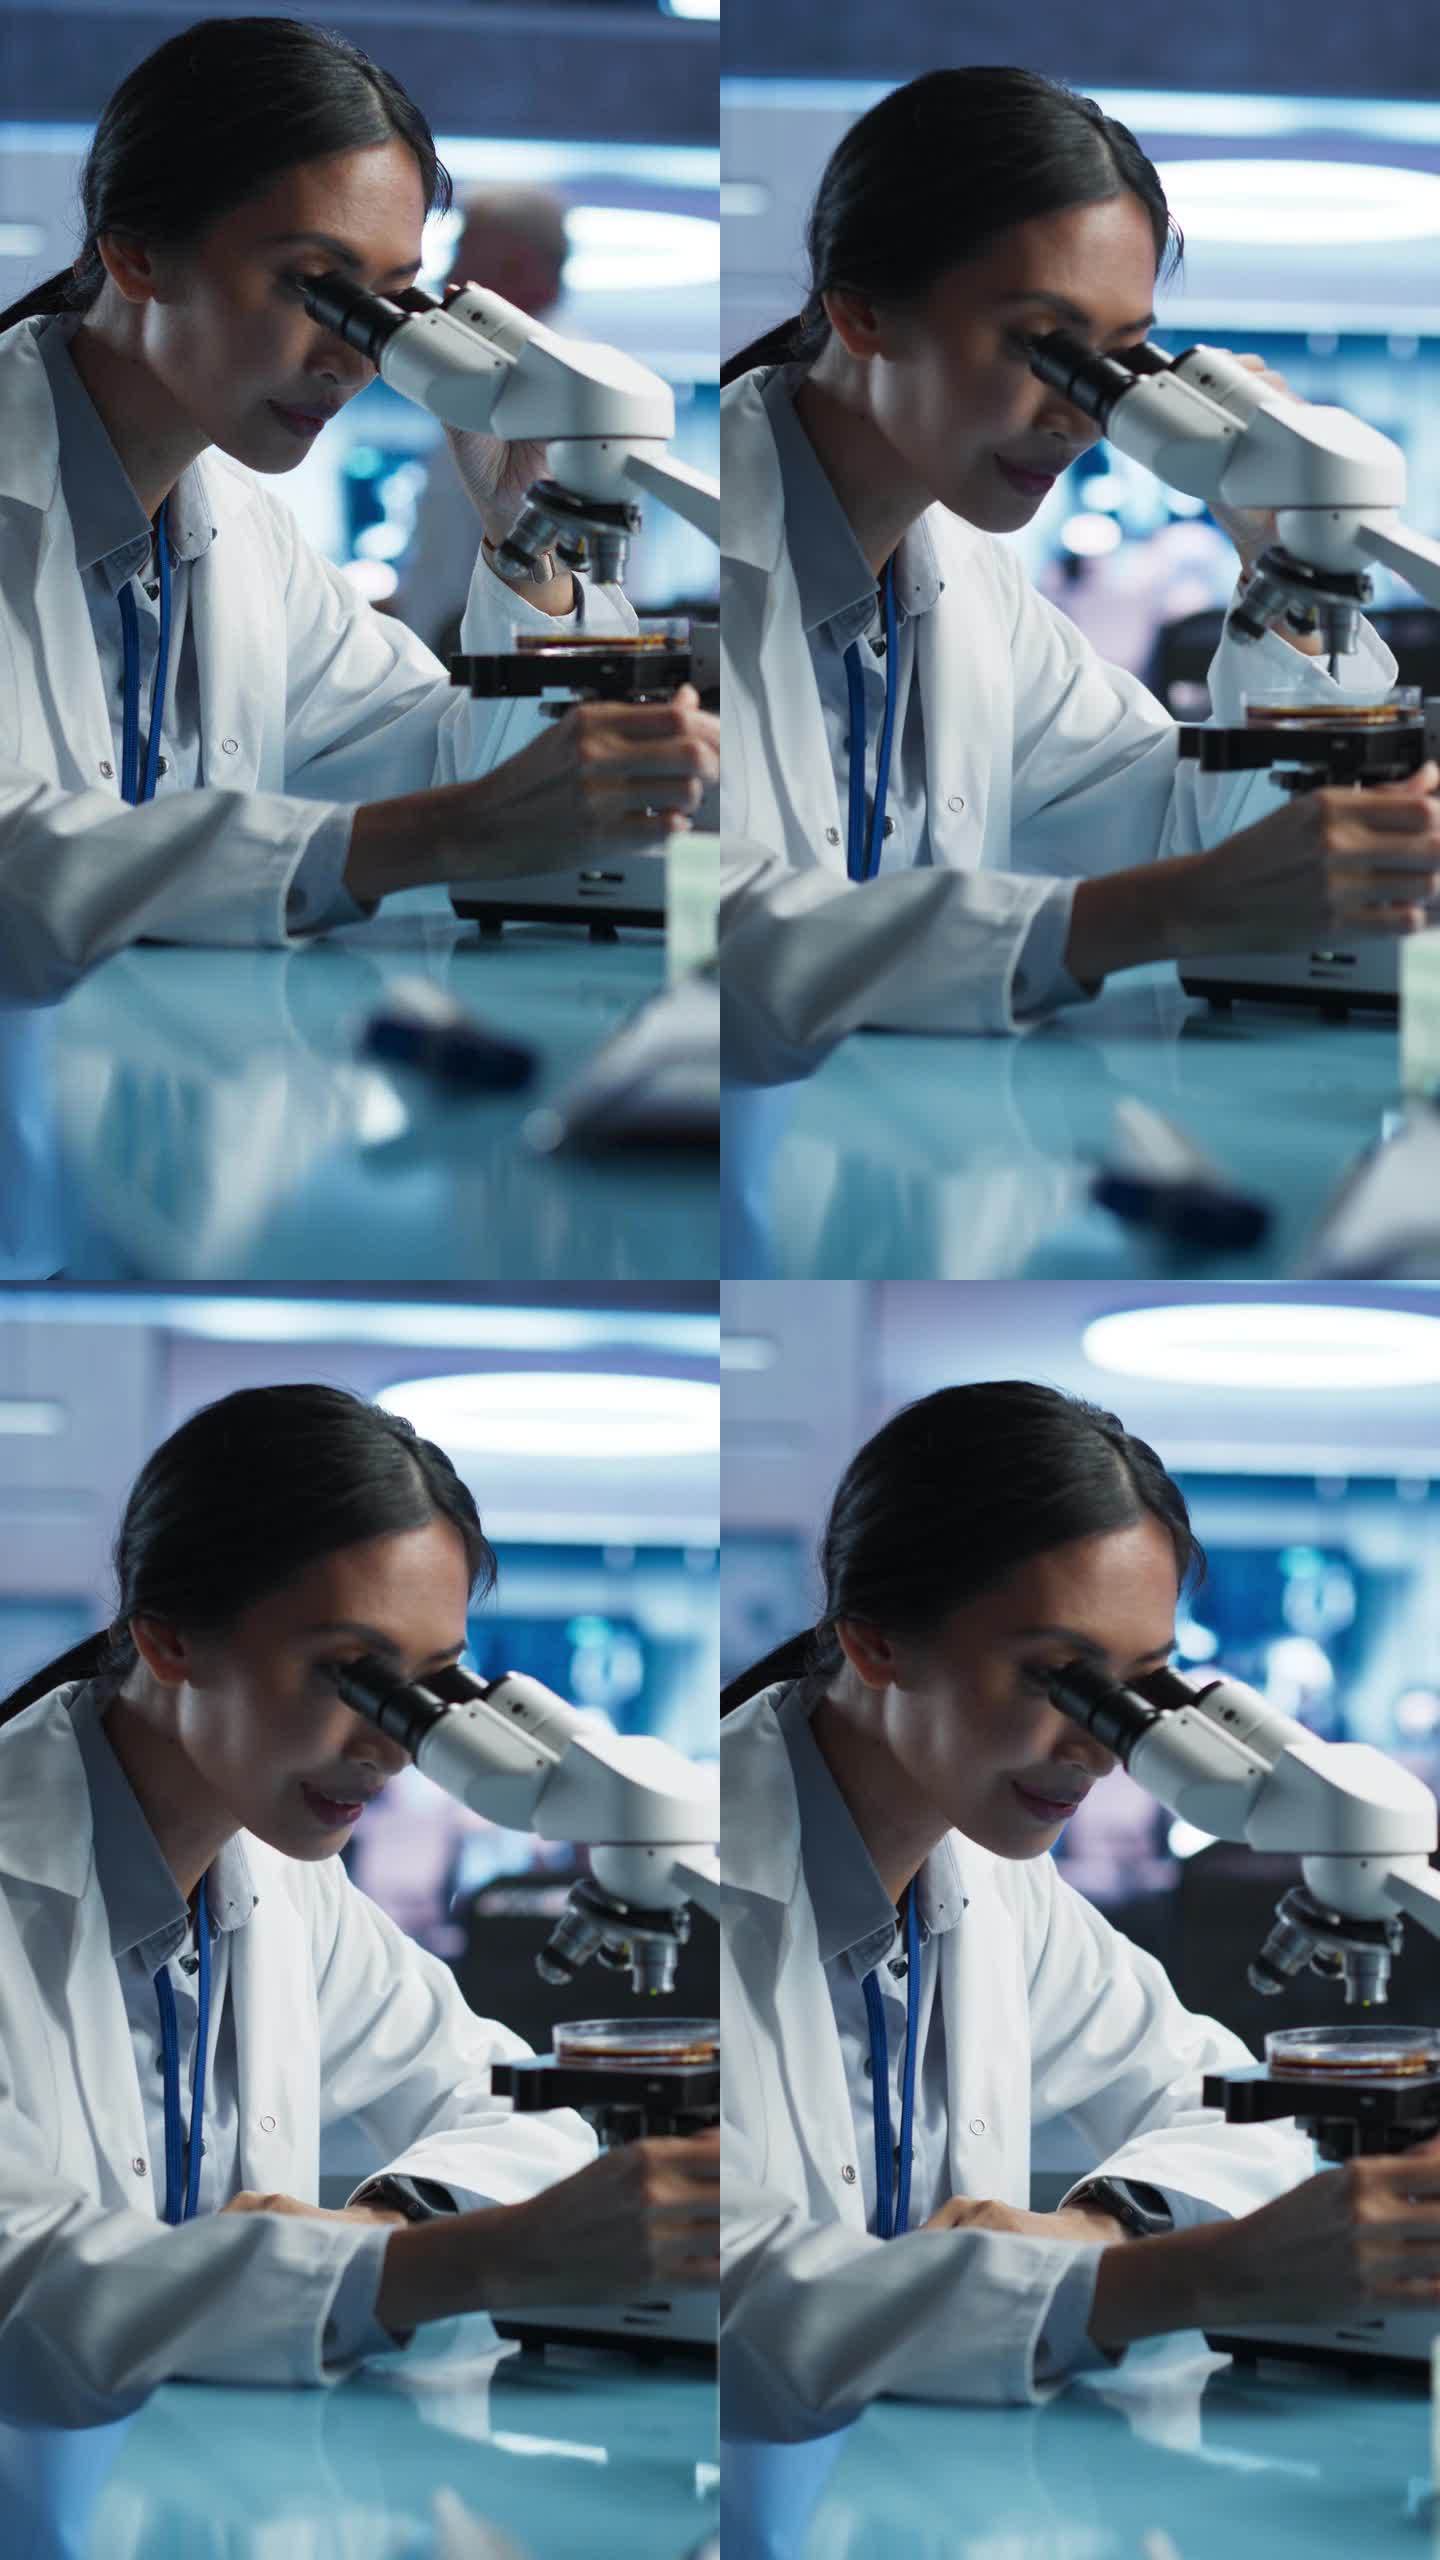 医学发展实验室竖屏:亚洲女科学家用显微镜分析培养皿样品。大型制药实验室与专家进行生物技术研究。